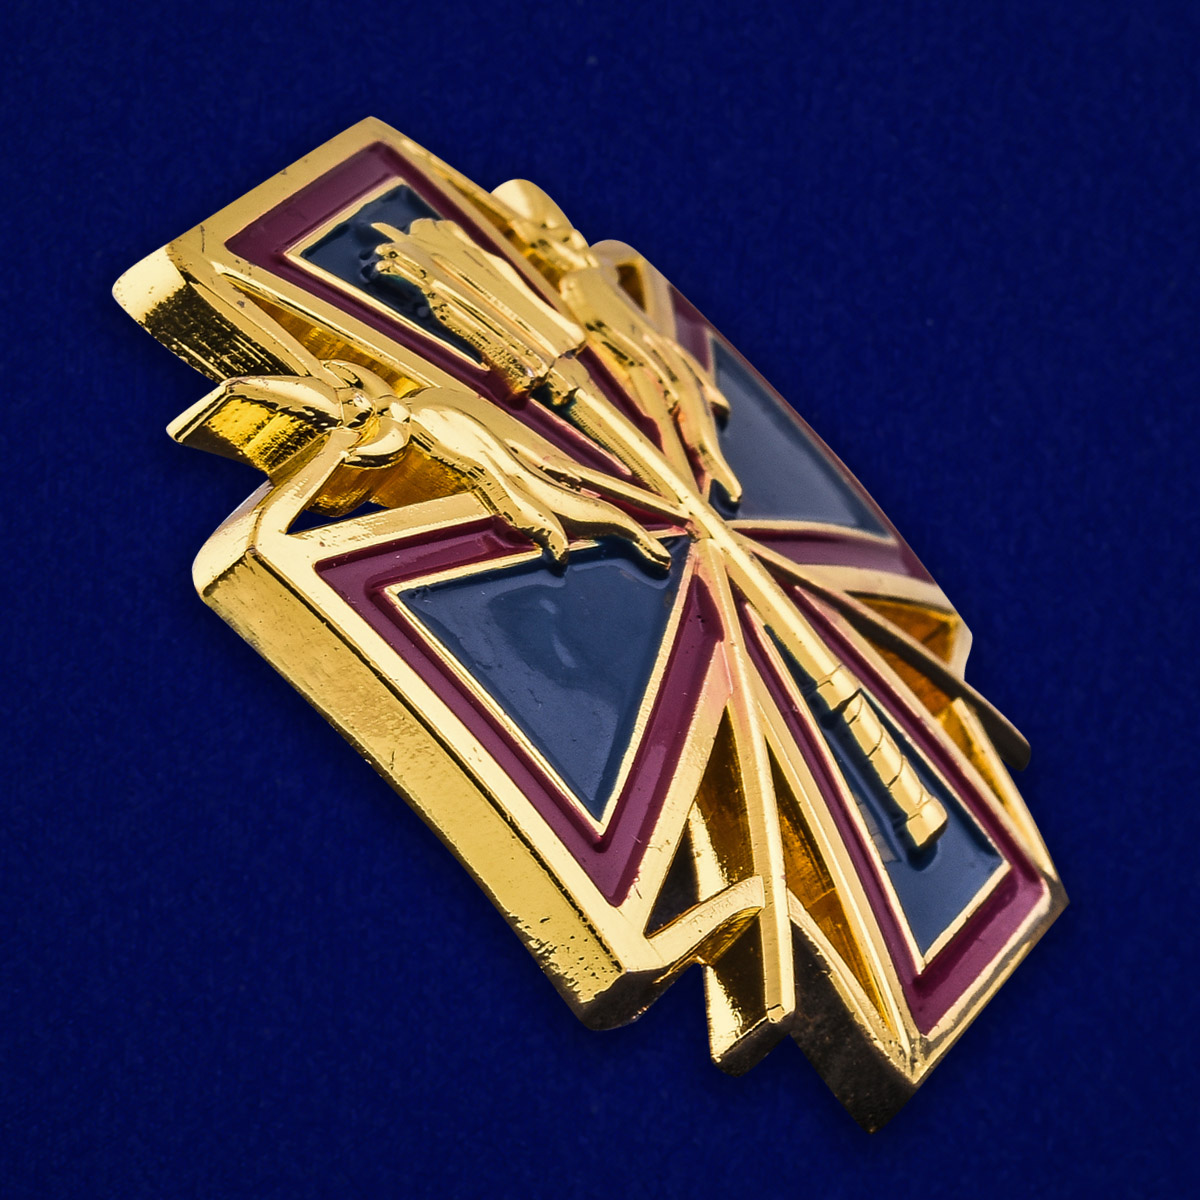 Наградной крест "За заслуги перед Кубанским казачеством" в футляре из флока с пластиковой крышкой 